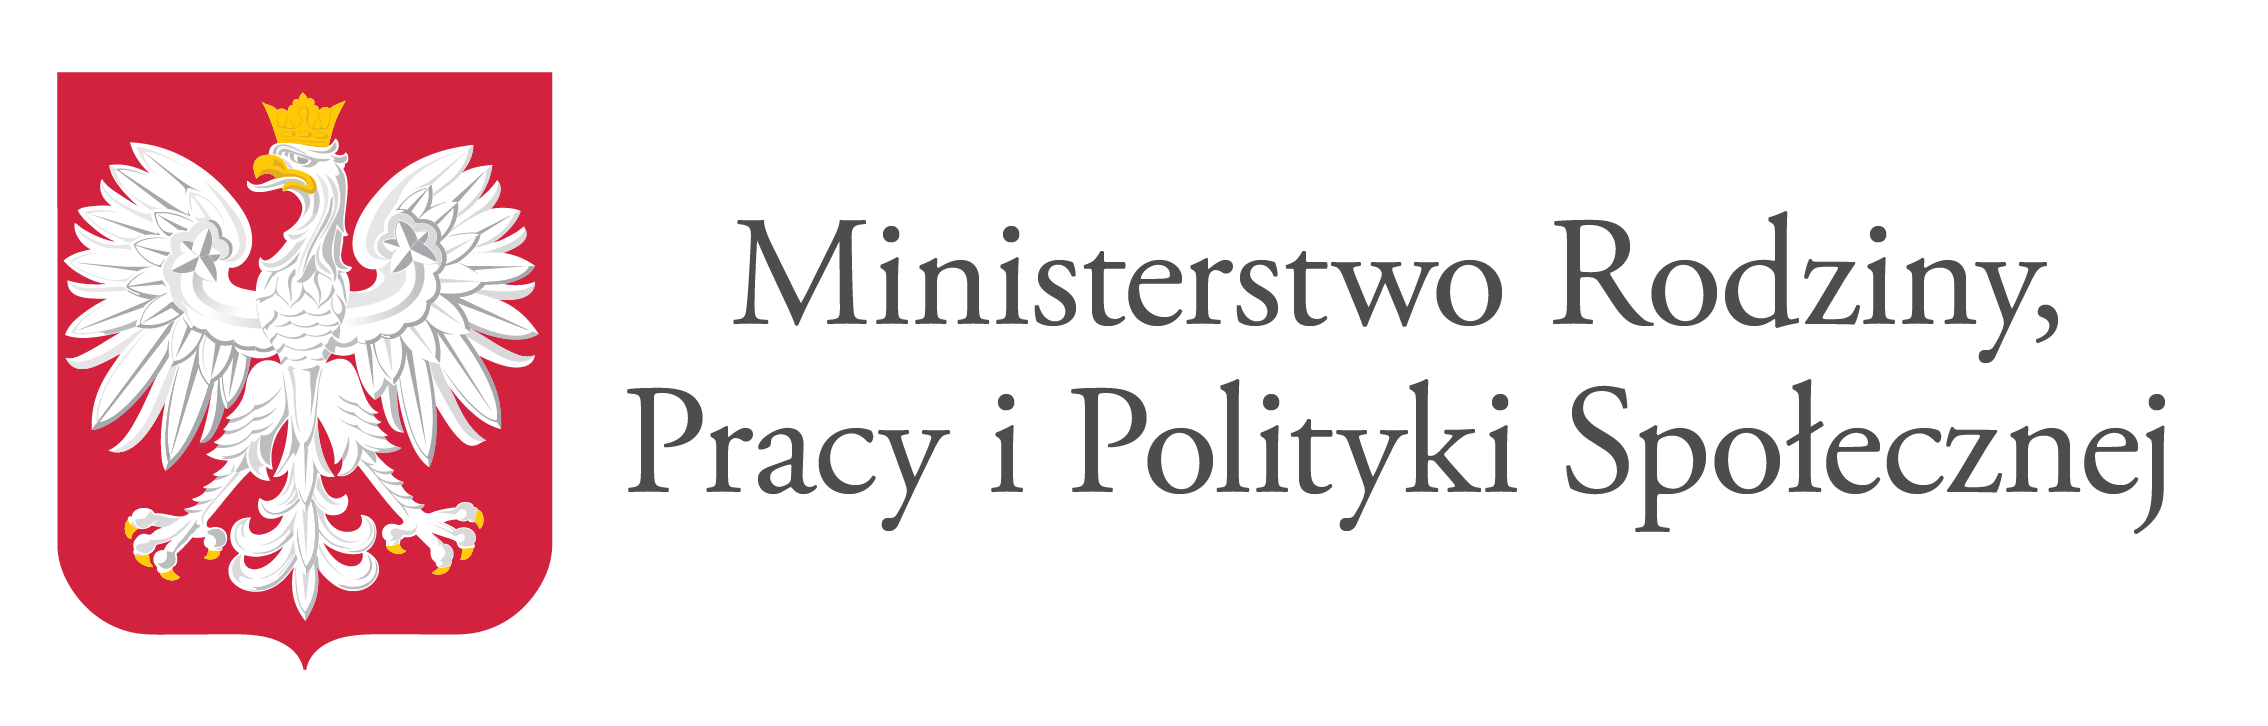 Logo Ministerstwa Rodziny Pracy i Polityki Społecnej 